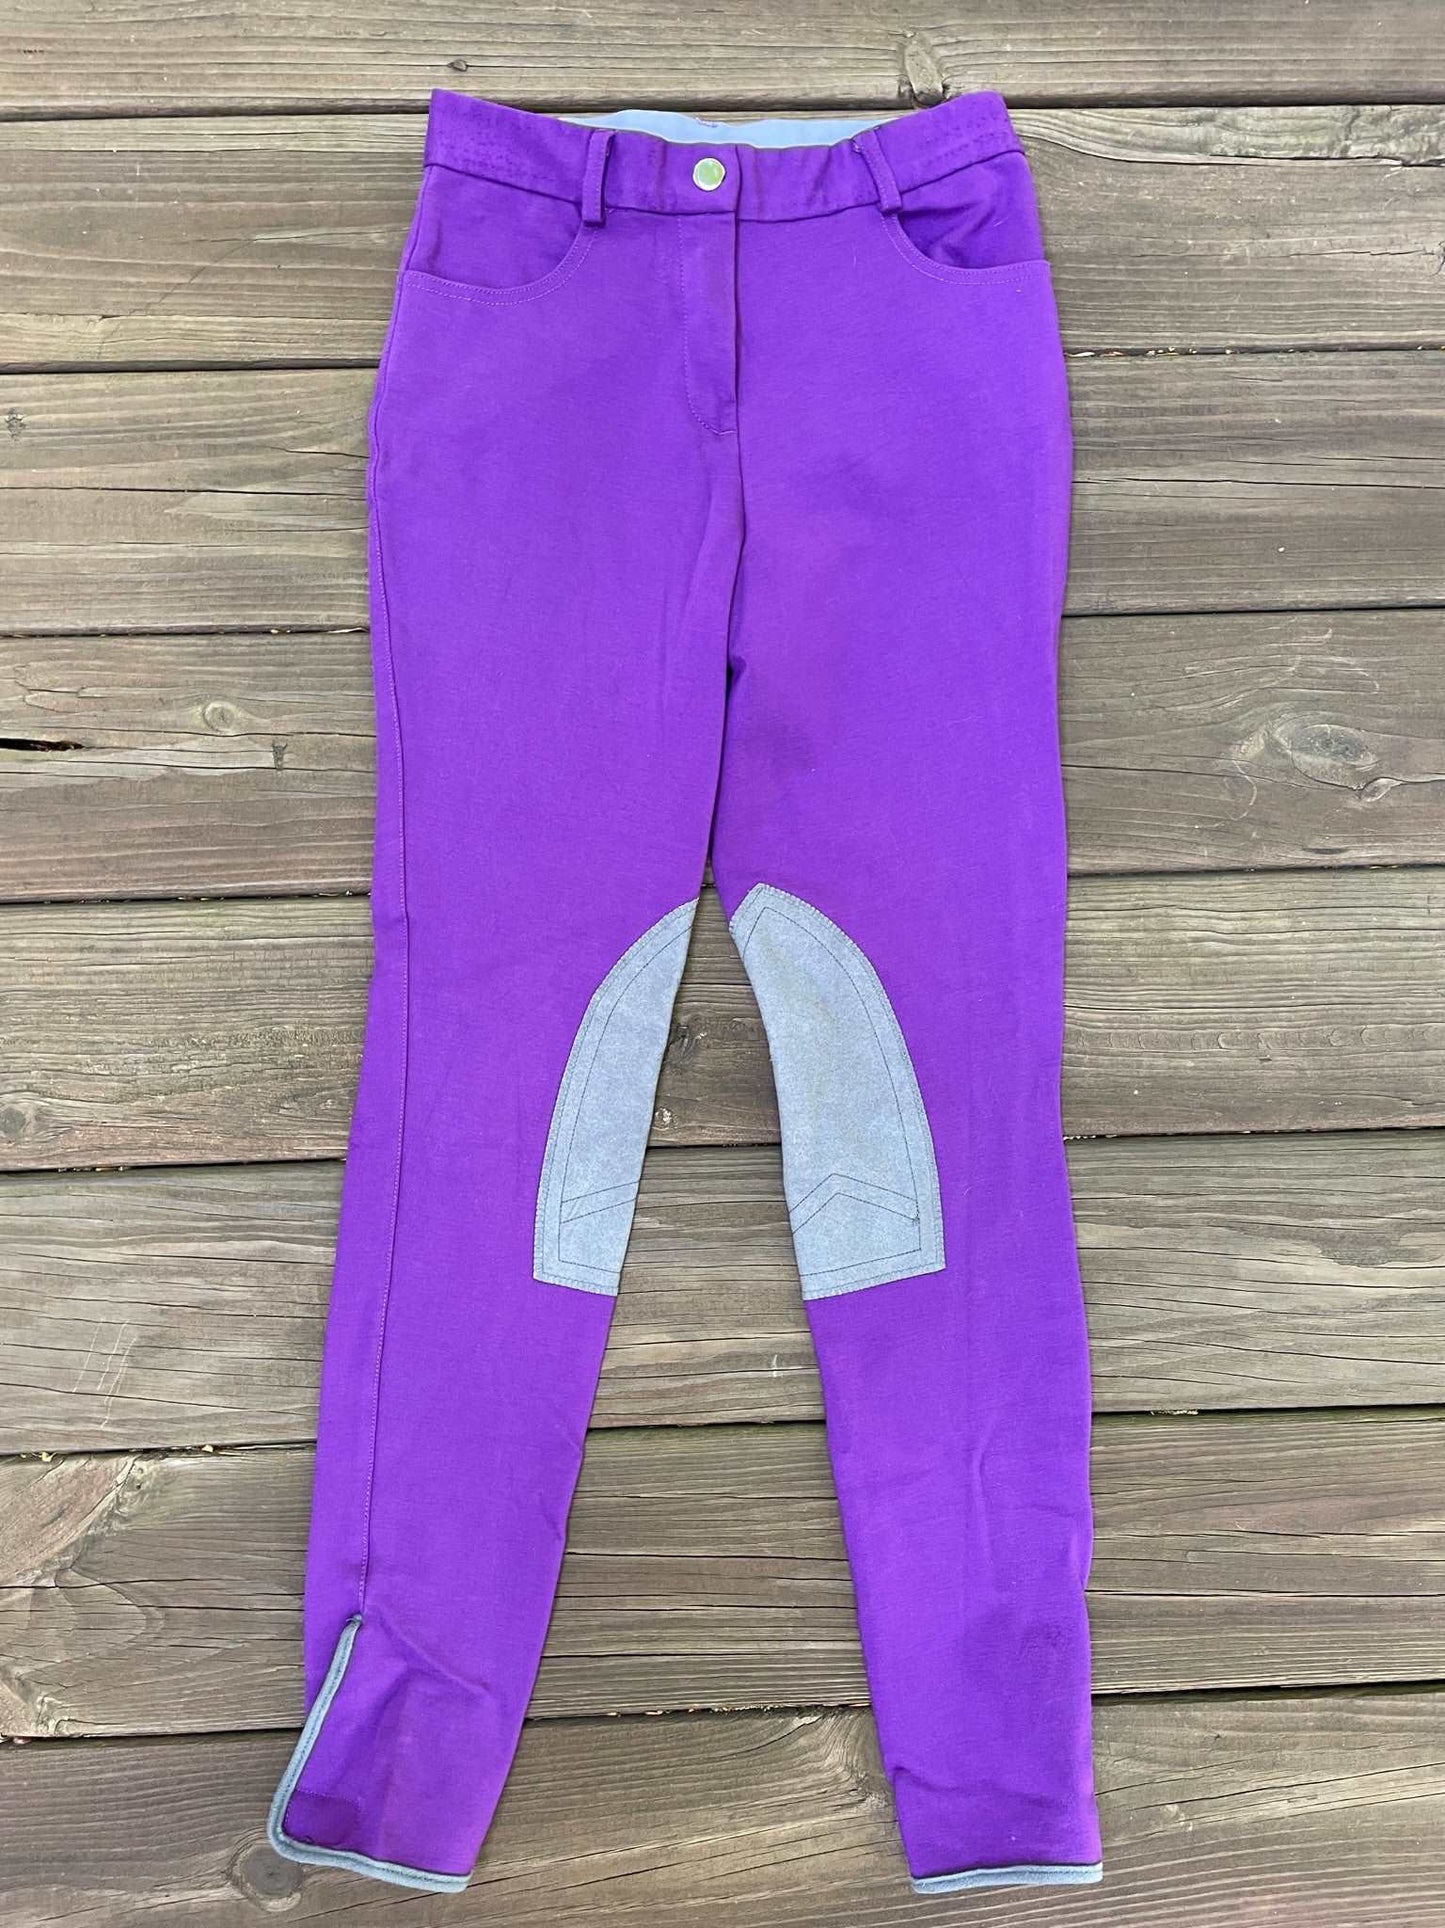 ThriftedEquestrian Clothing 26 Annie's Equestrian Apparel Purple Breeches - 26R